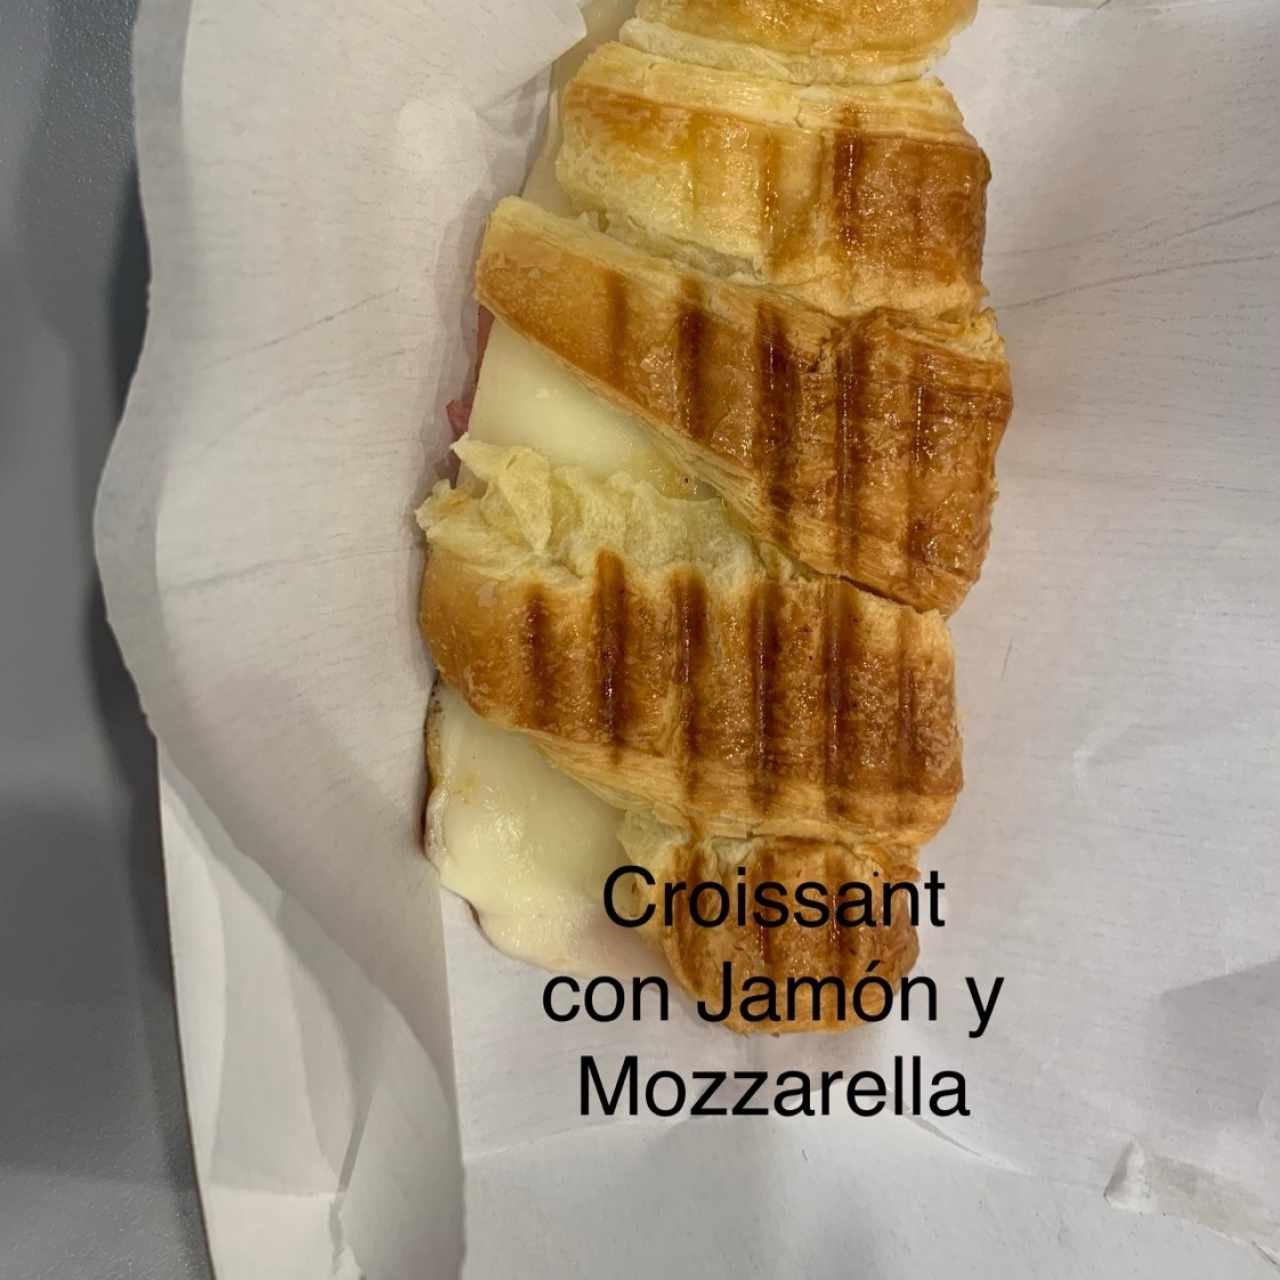 Croissant con Jamón y Mozzarella